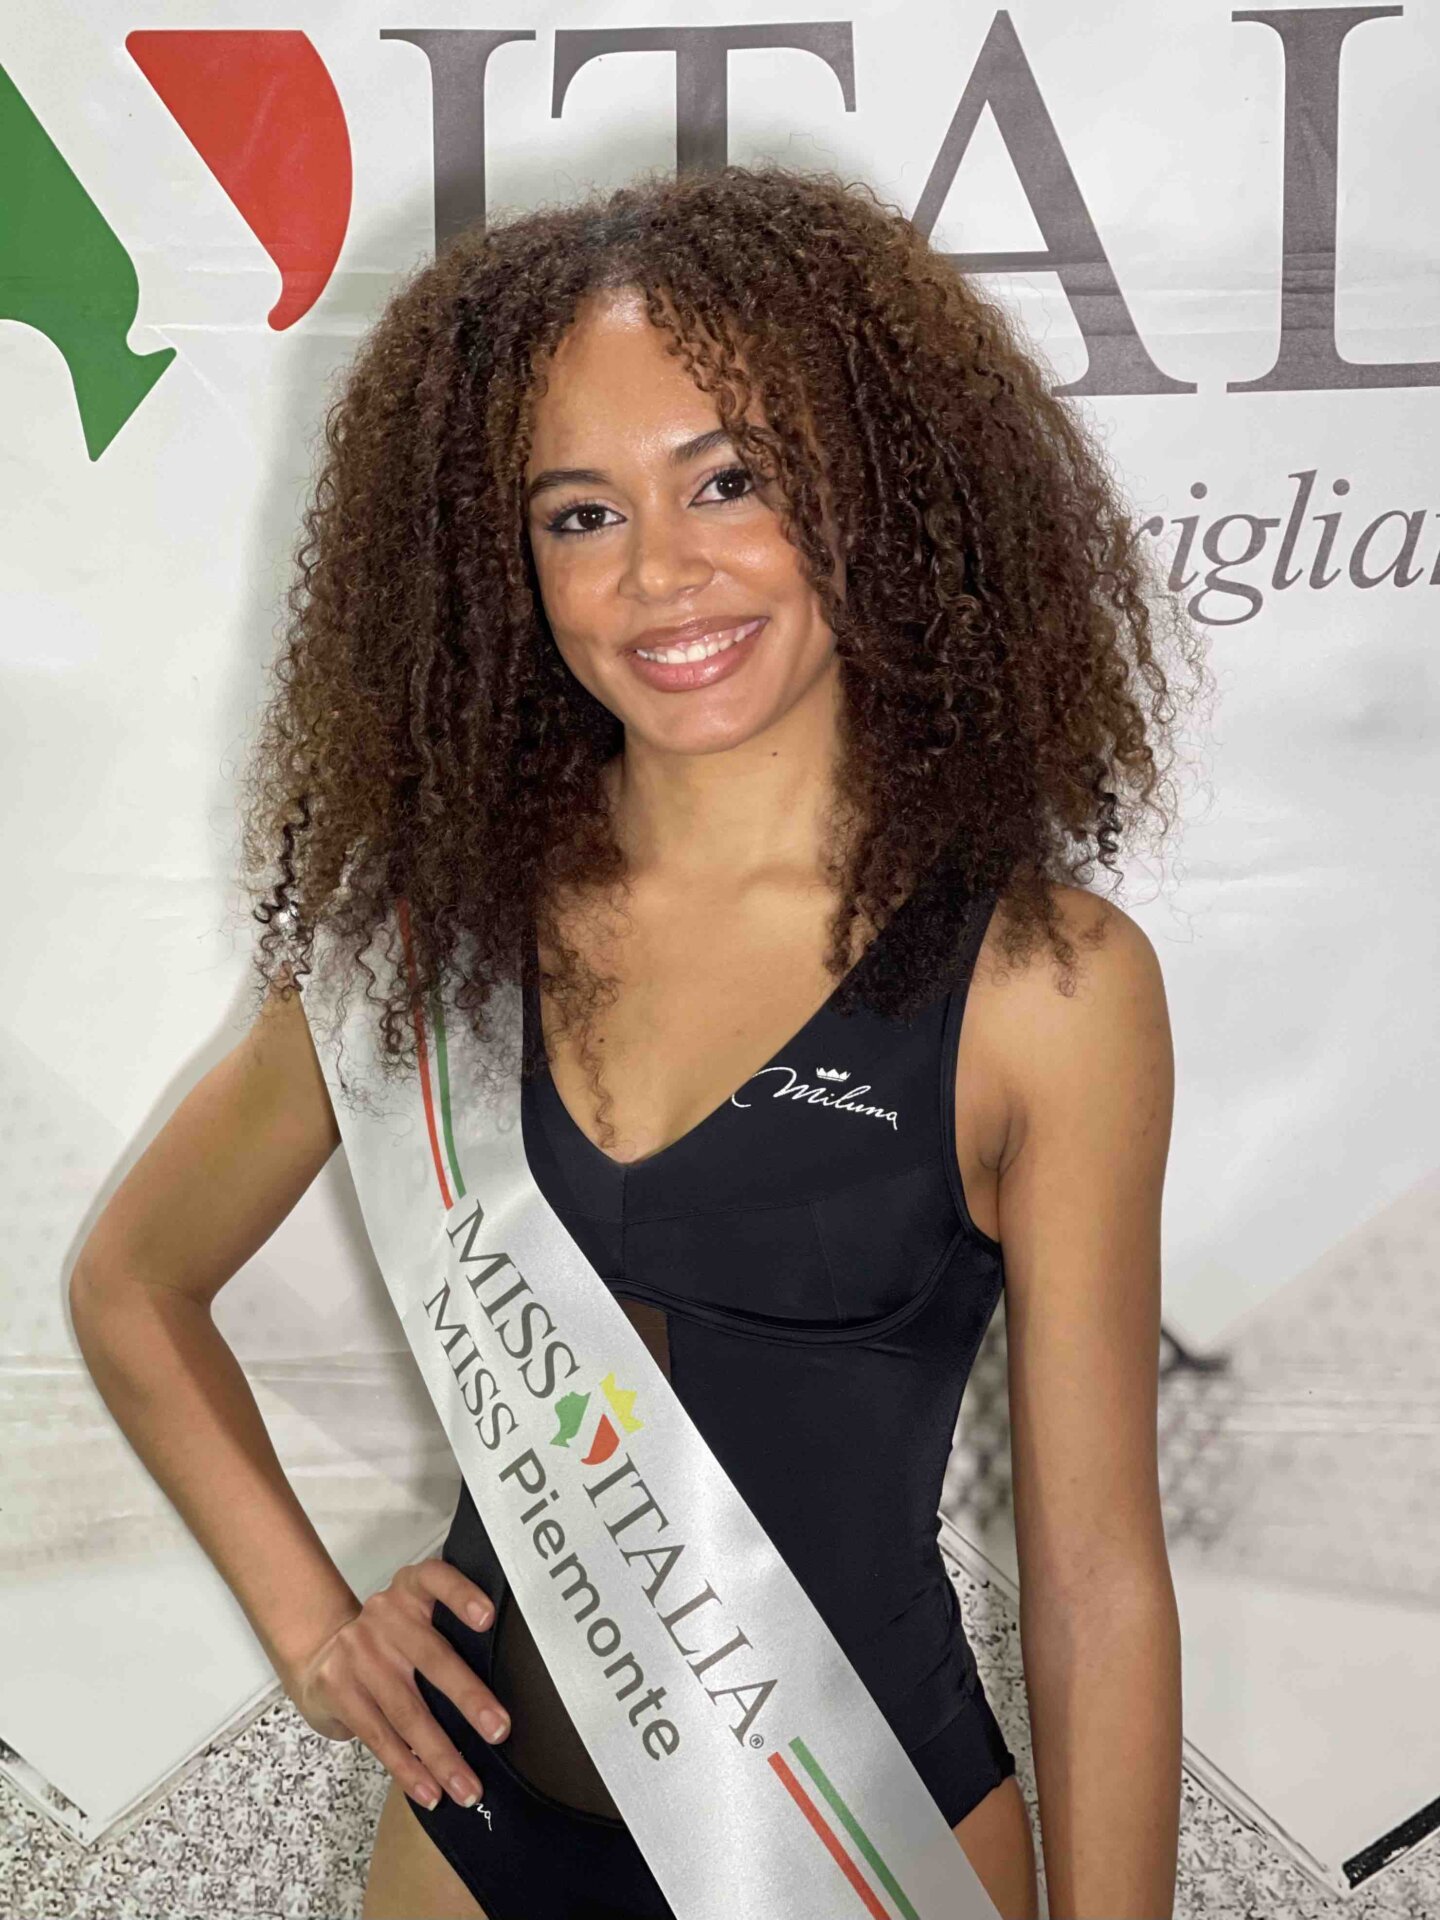 Masiel Tomalino Miss Piemonte 2021